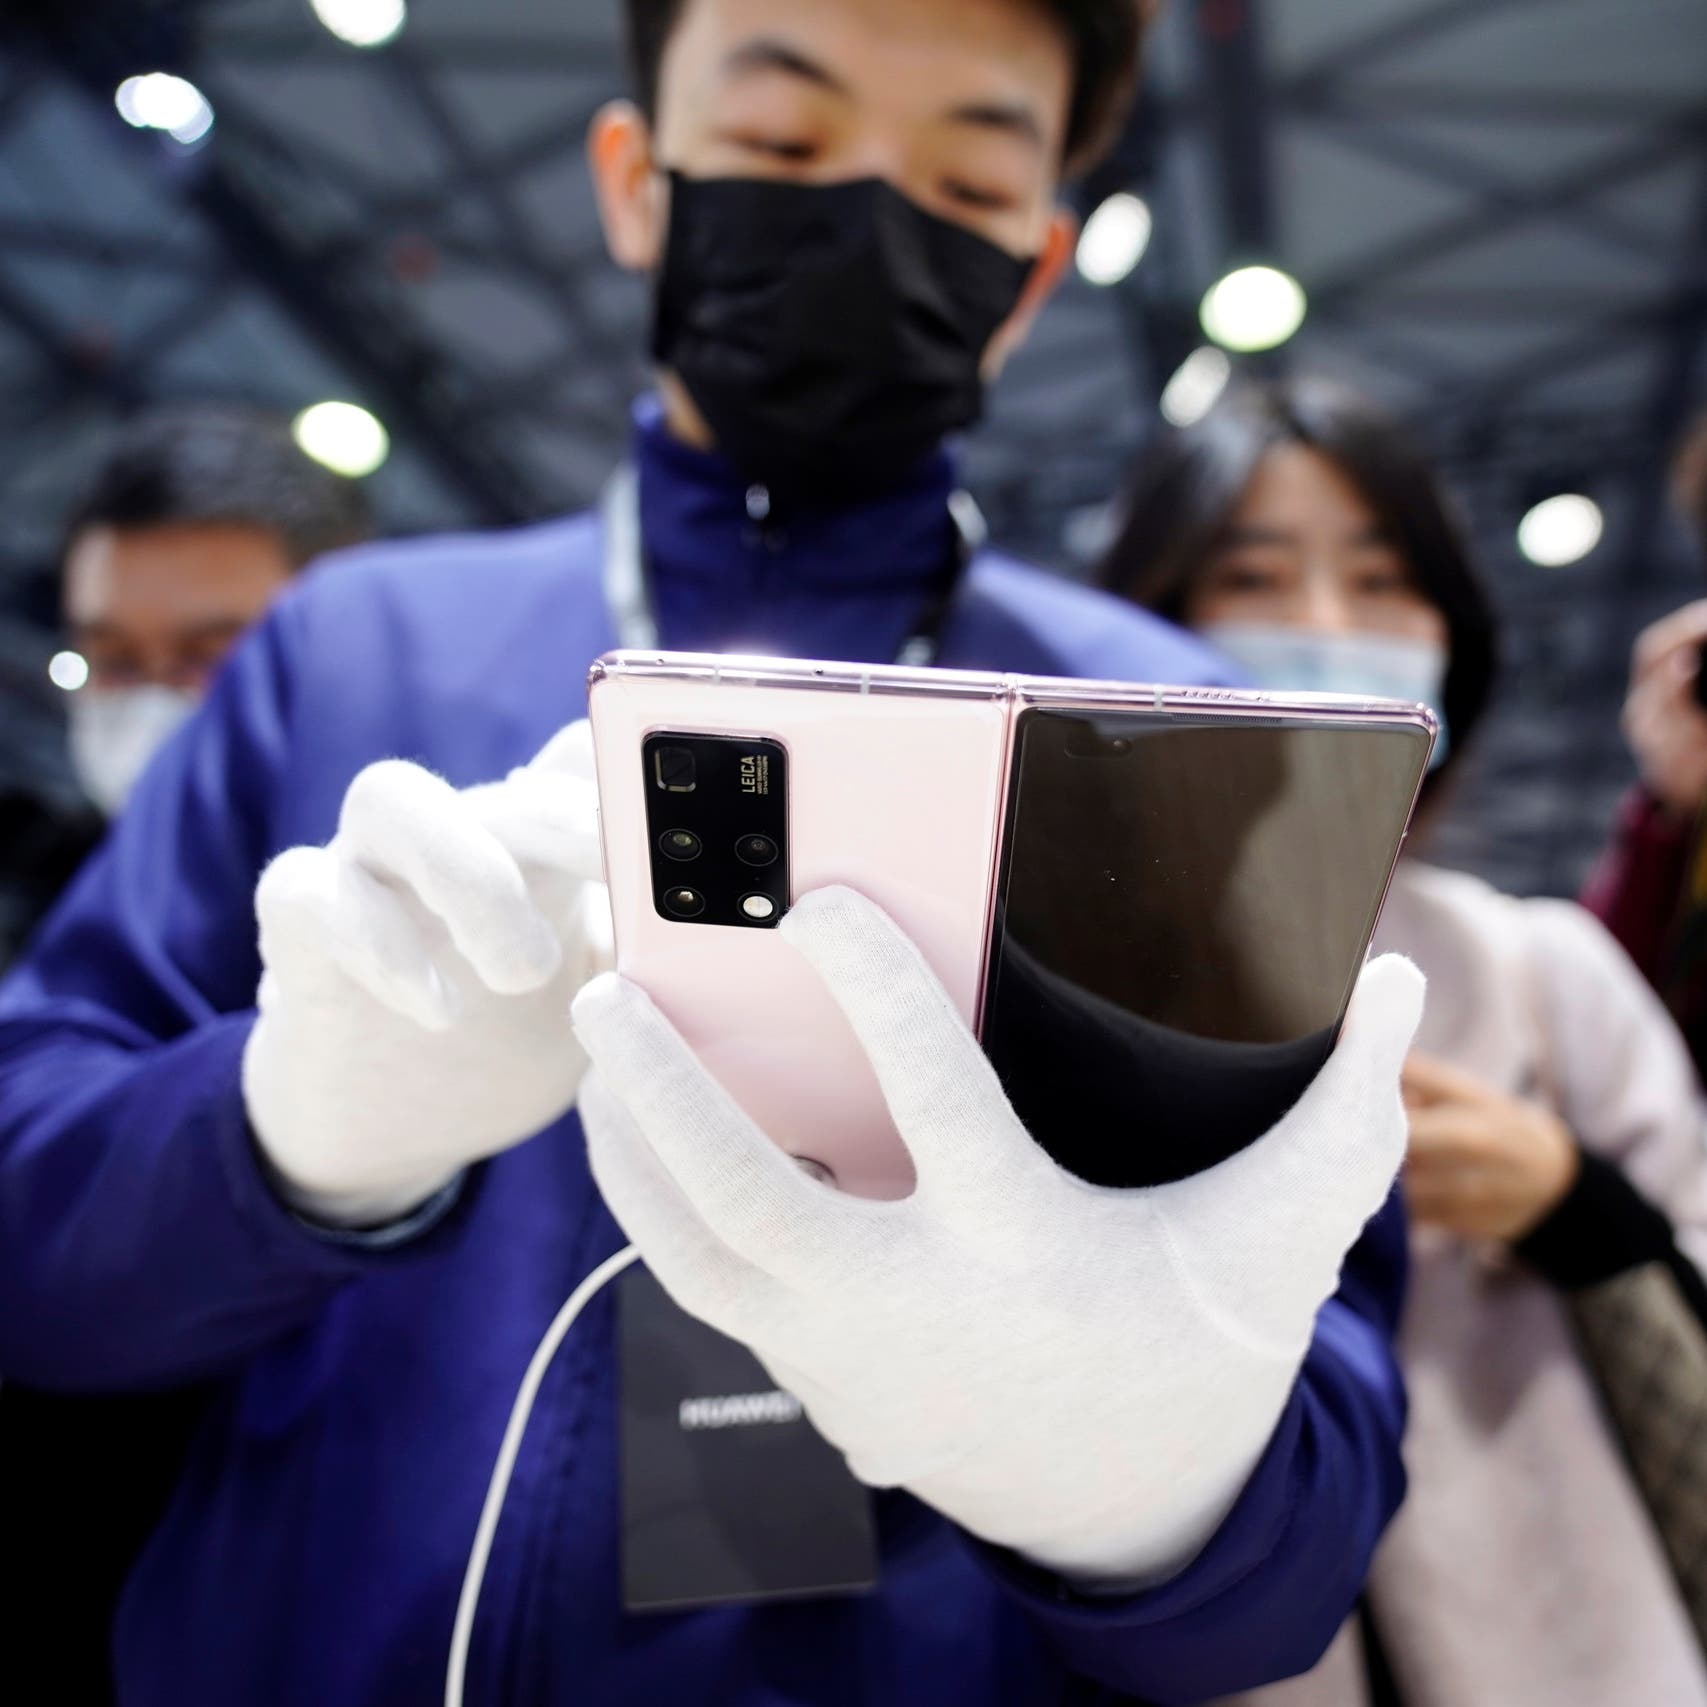 مبيعات الصين من الهواتف الذكية تهبط في 2022 لأدنى مستوى في 10 سنوات